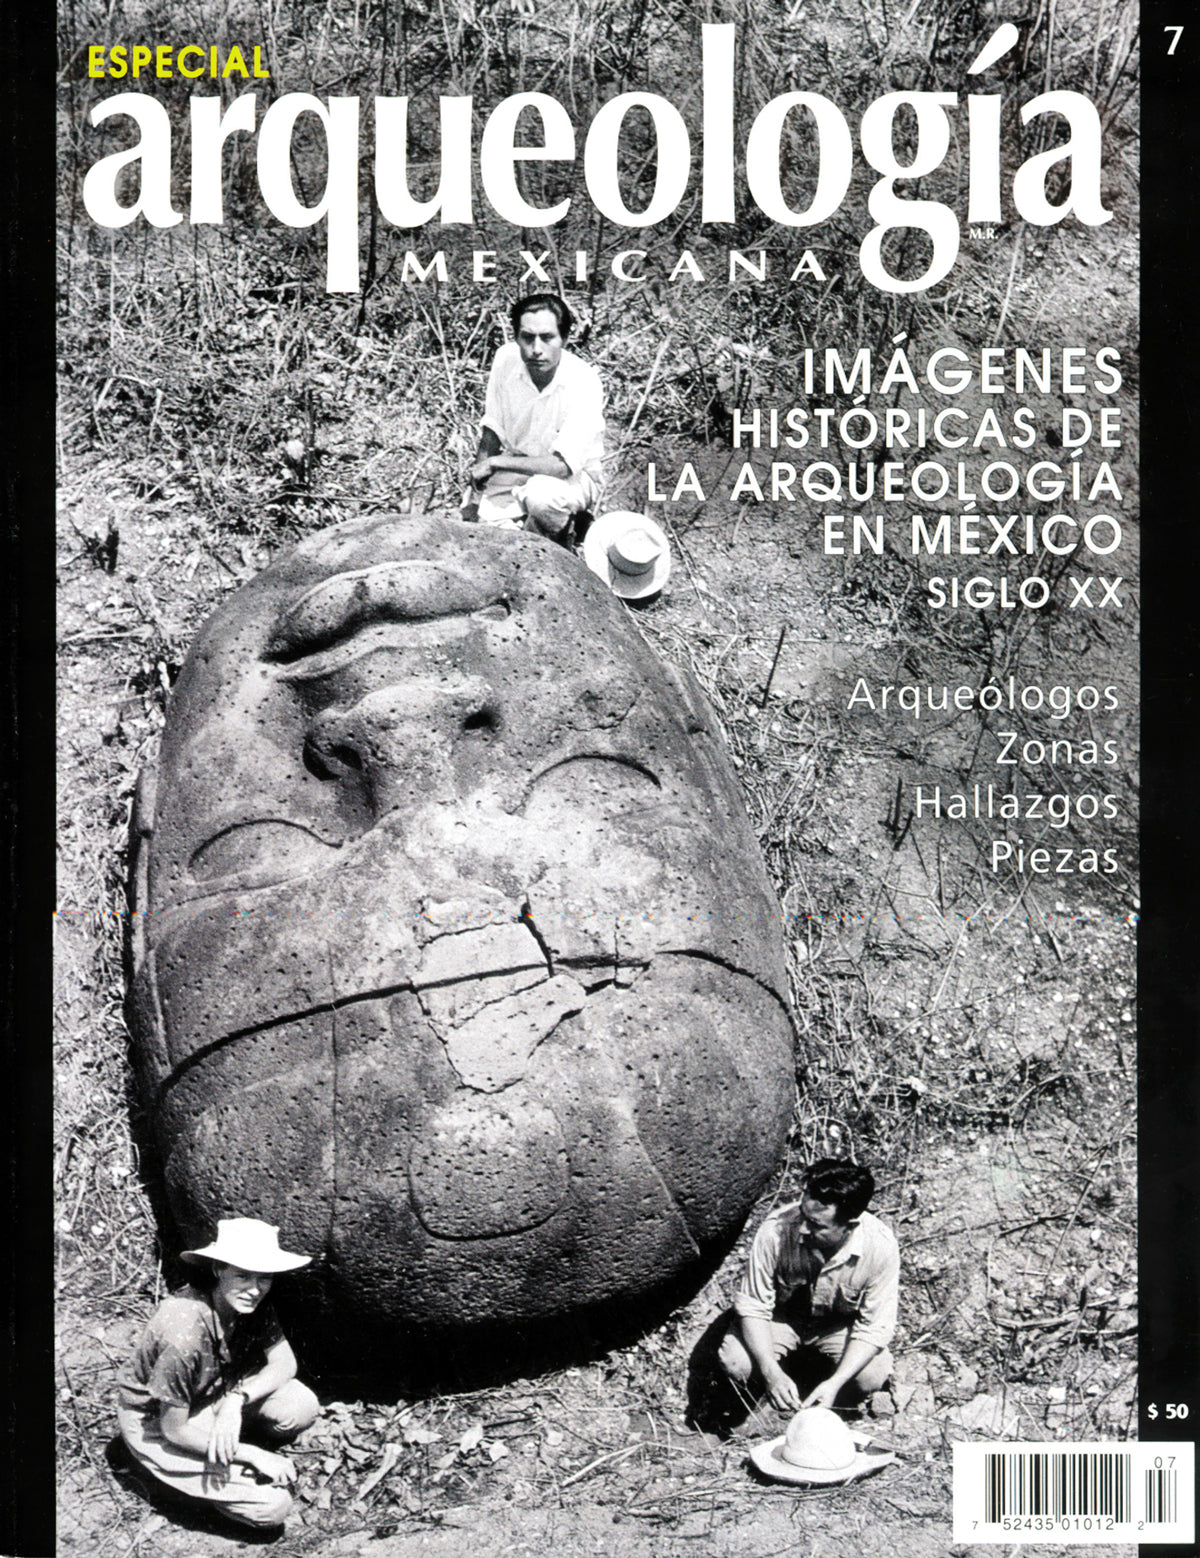 Imágenes Históricas de la Arqueología en México siglo XX